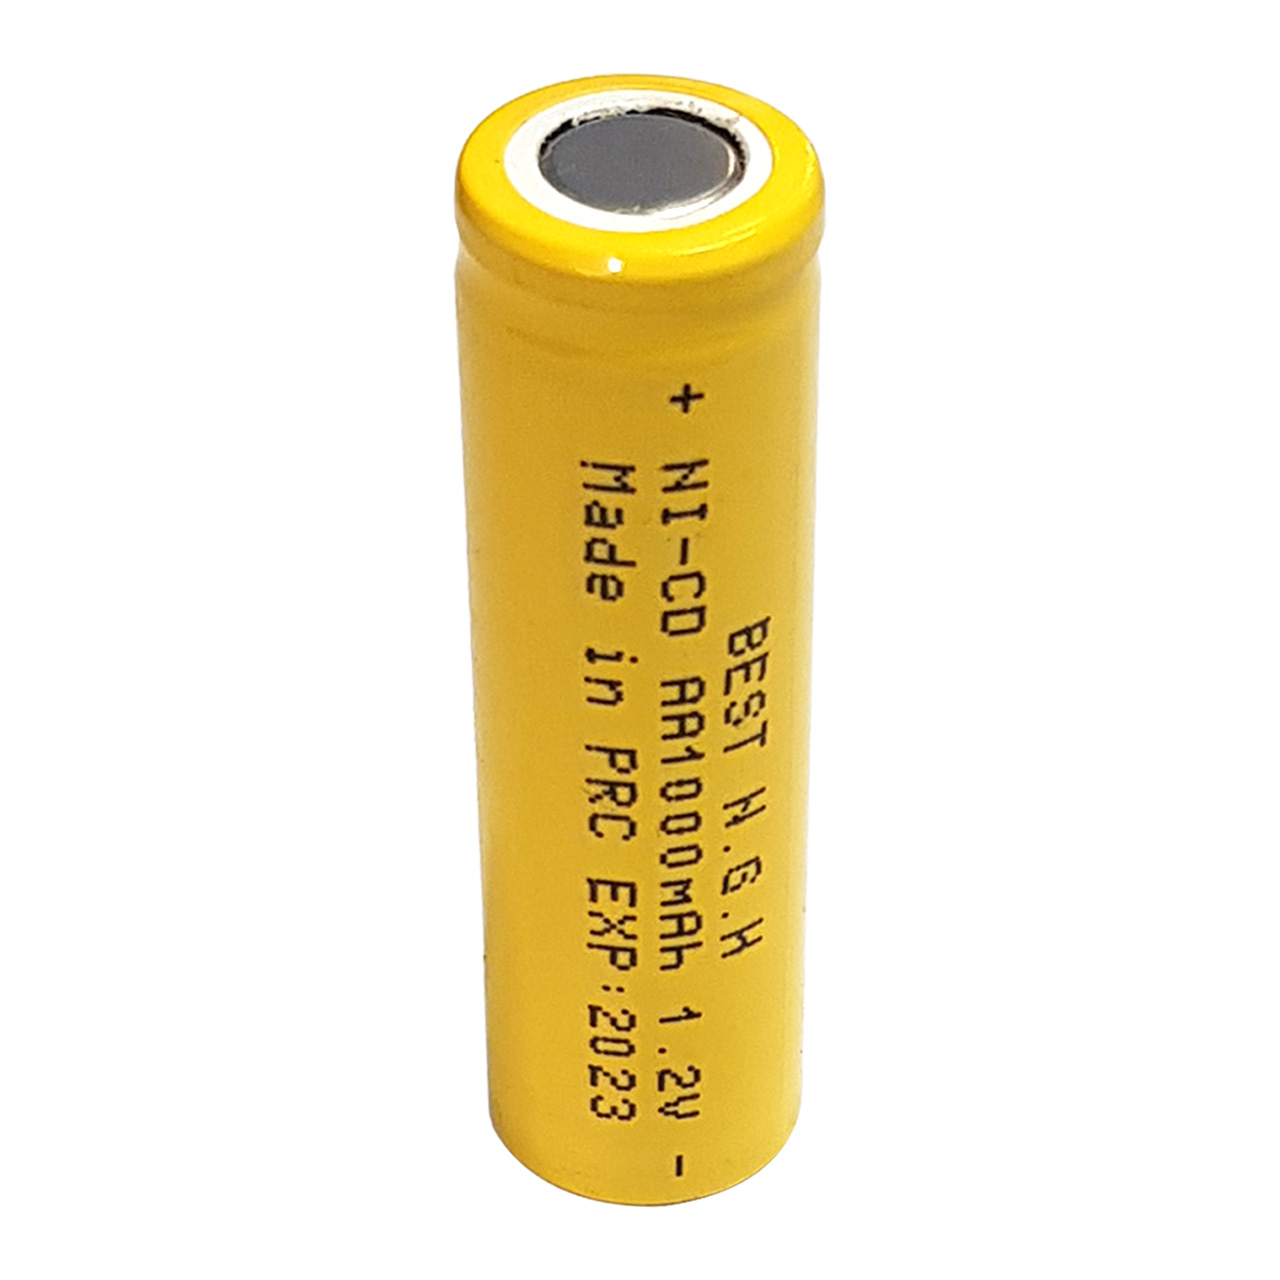 باتری قلمی قابل شارژ بست ان جی اچ مدل B-113